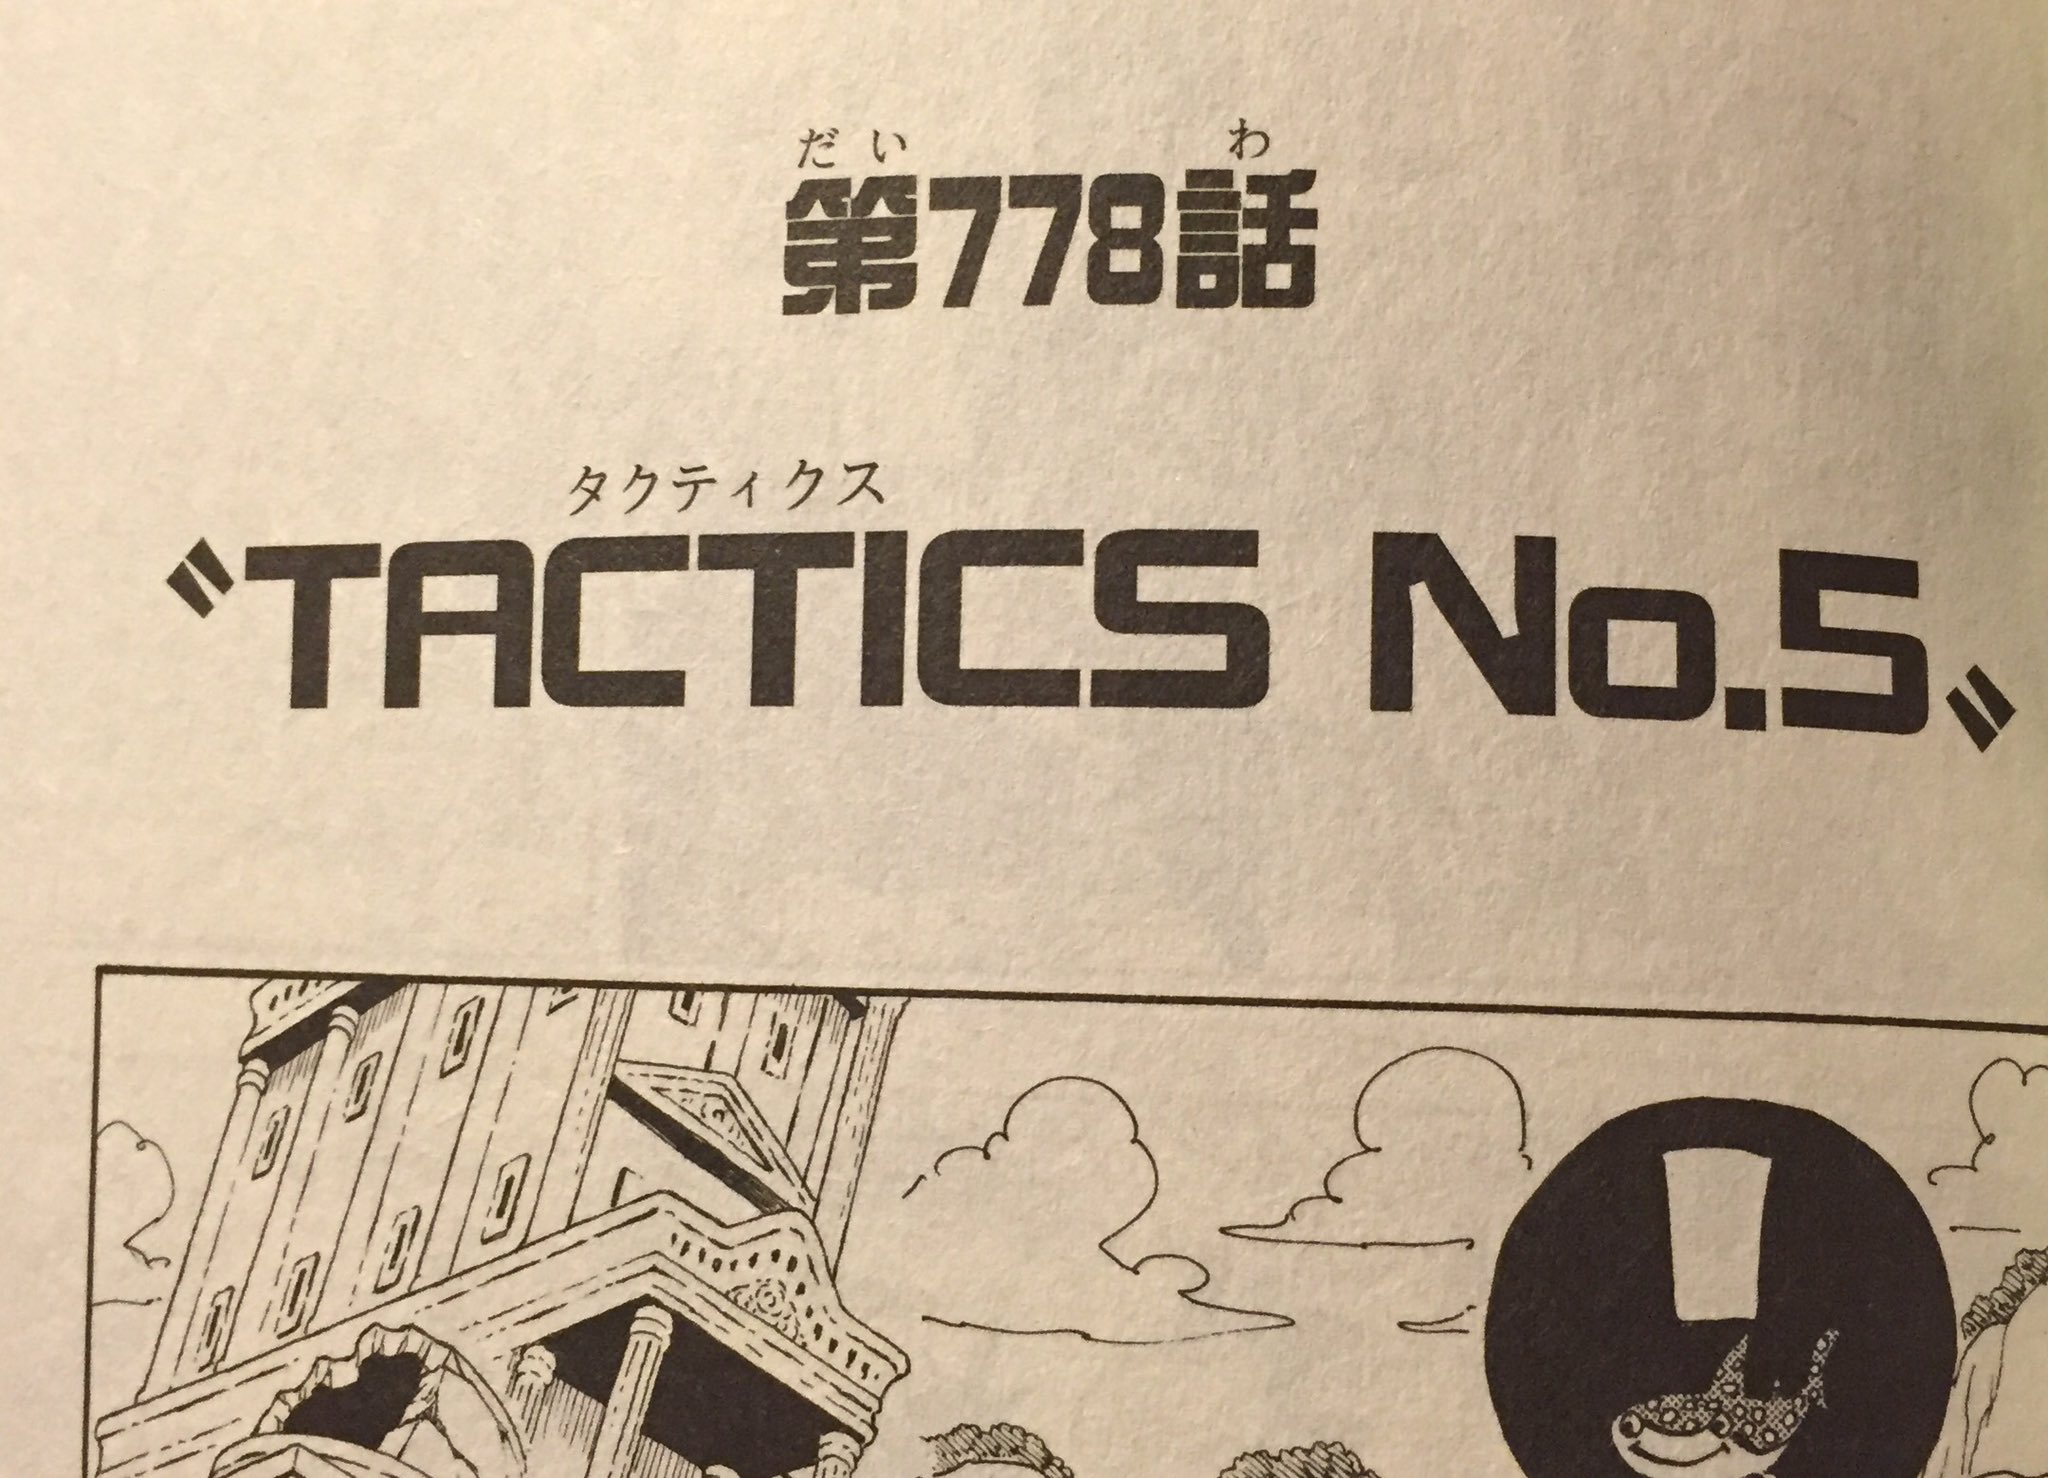 One Pieceが大好きな神木 スーパーカミキカンデ ピーカやっつける時タクティクスno 5で決まったけど 6 7 8 9 ってずっといいの思いつかなかったらタクティクス フィフティーンまでいっちゃってたのかもしれない T Co